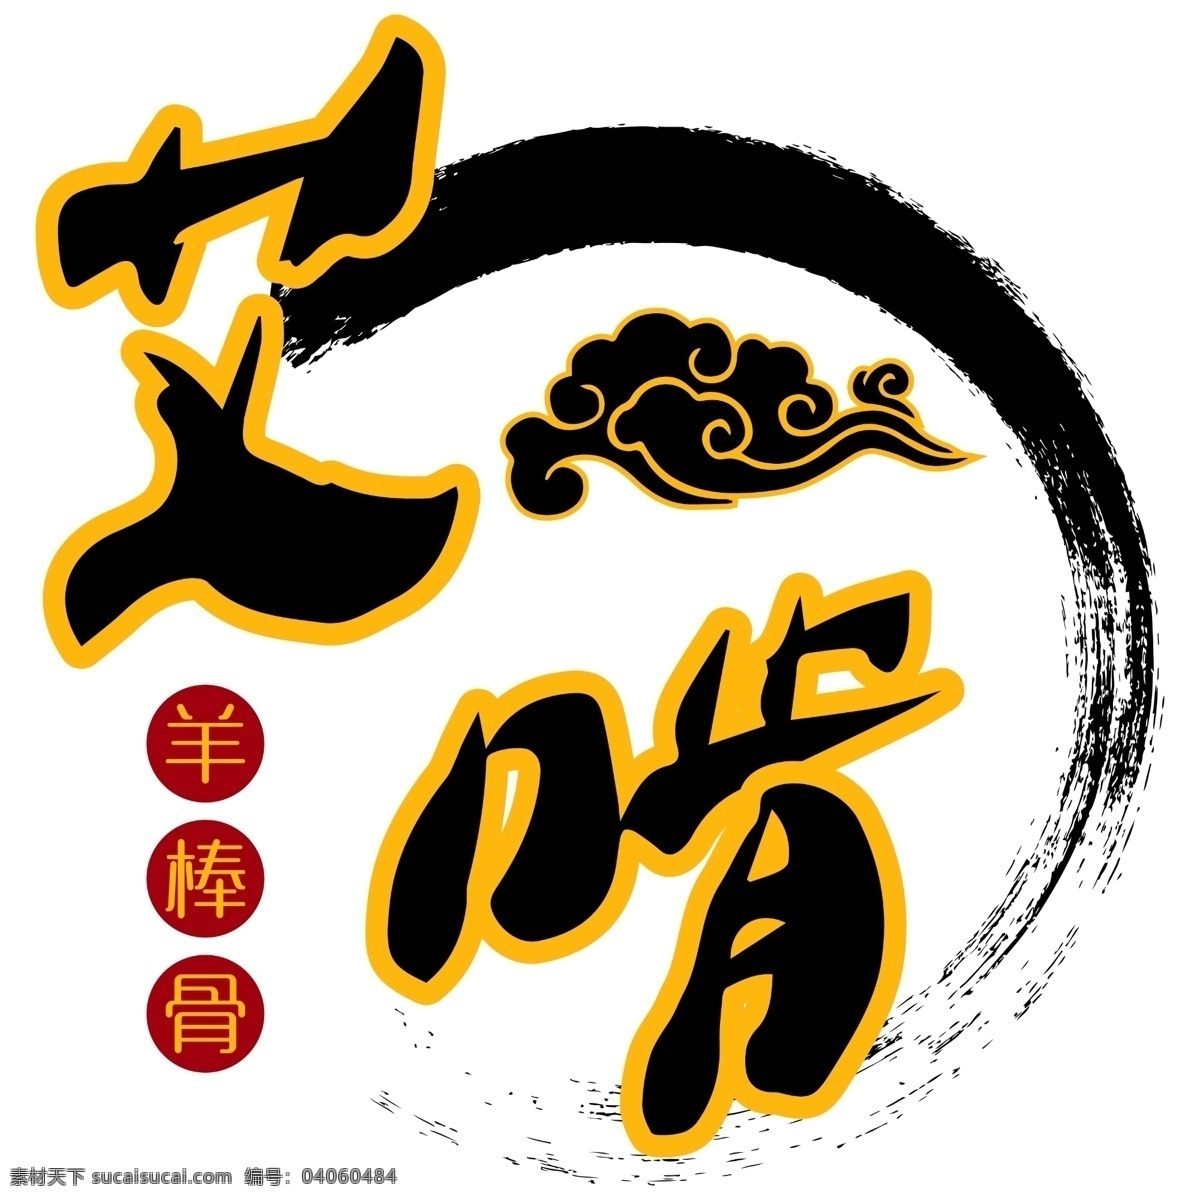 艾啃 艾 啃 logo 羊 棒 骨 连锁店